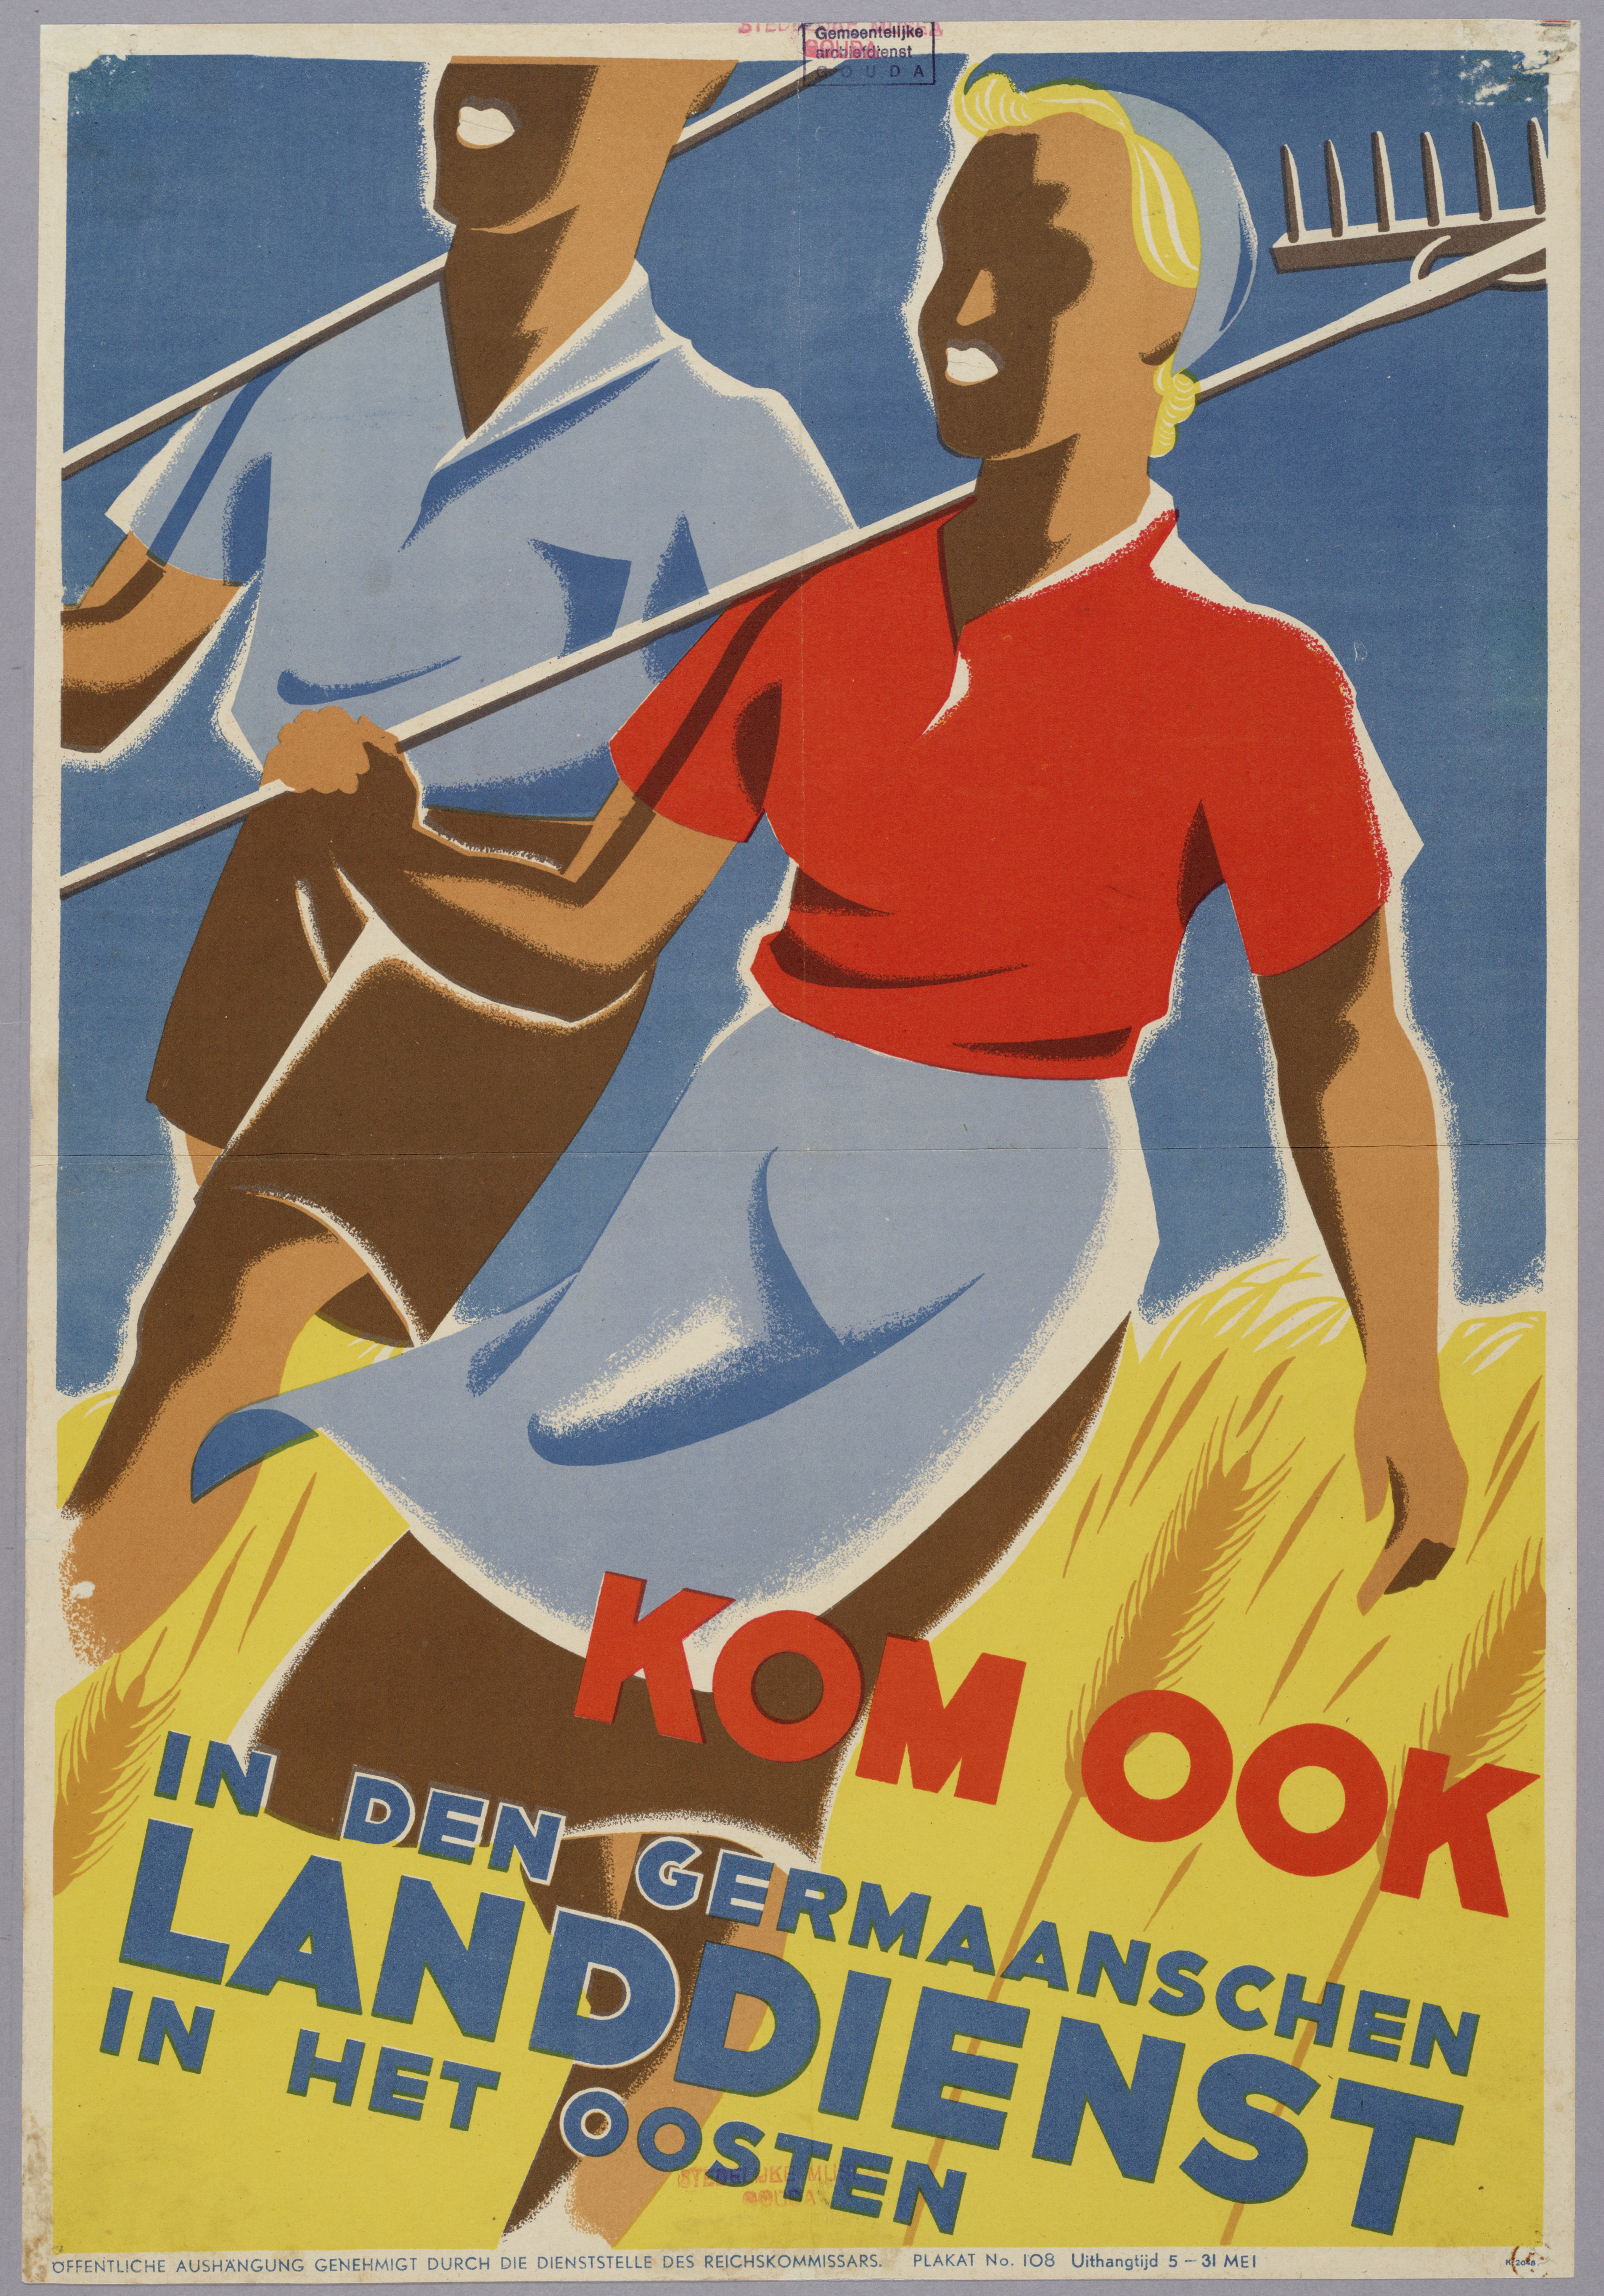 Affiche van de Germaansche Landdienst waarin werd opgeroepen tot vrijwillige tewerkstelling in Duitsland en Oost-Europa